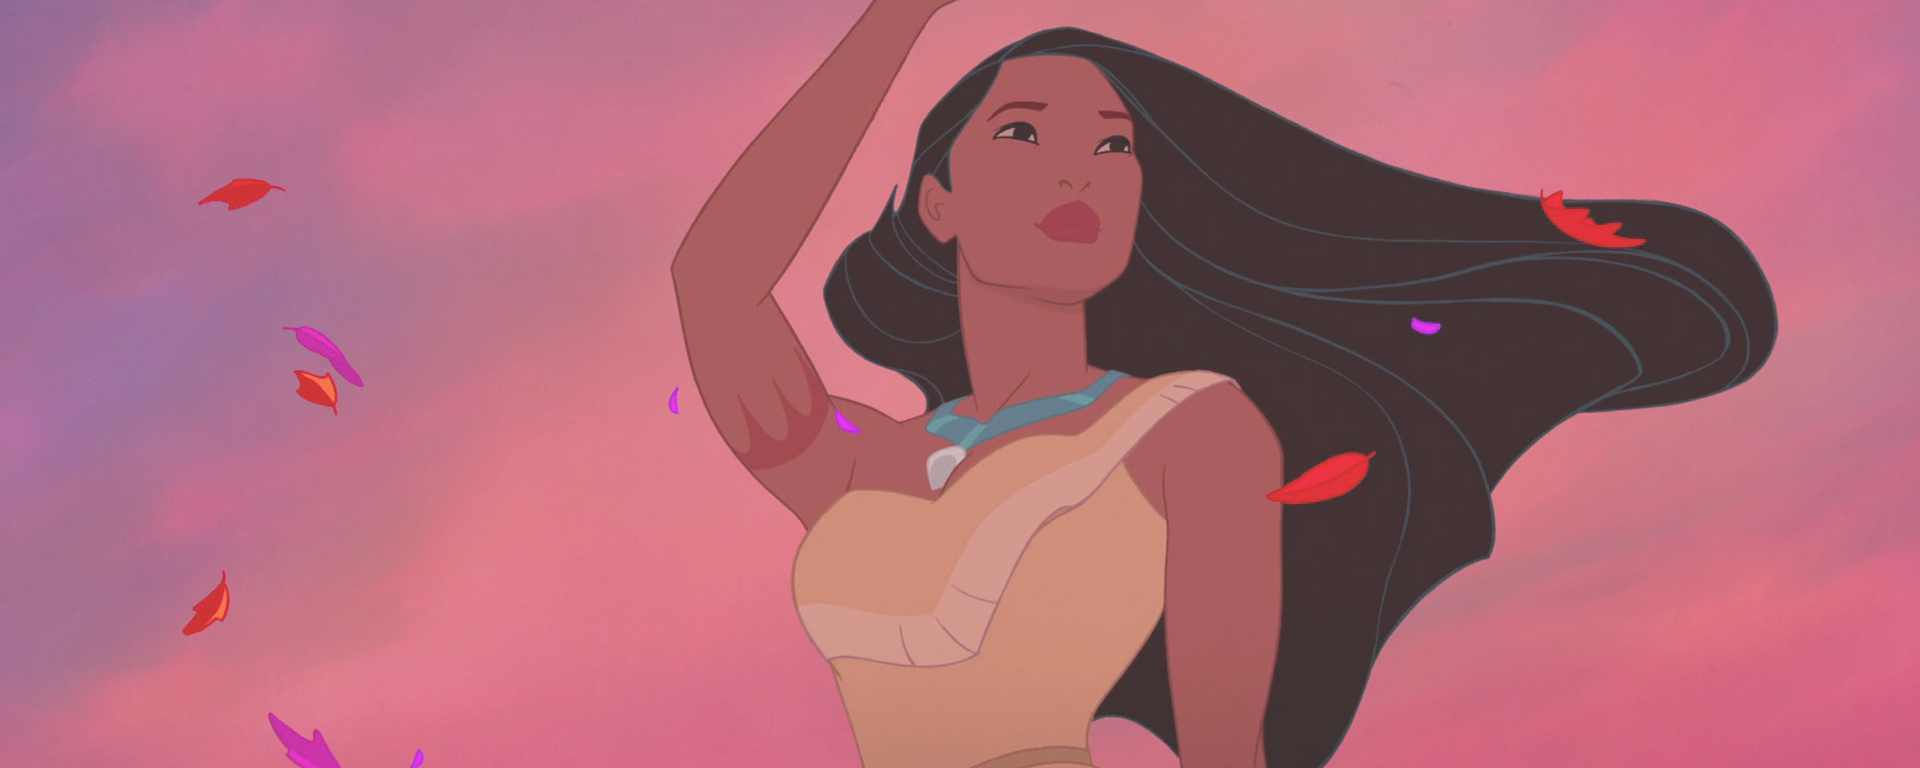 Pocahontas film